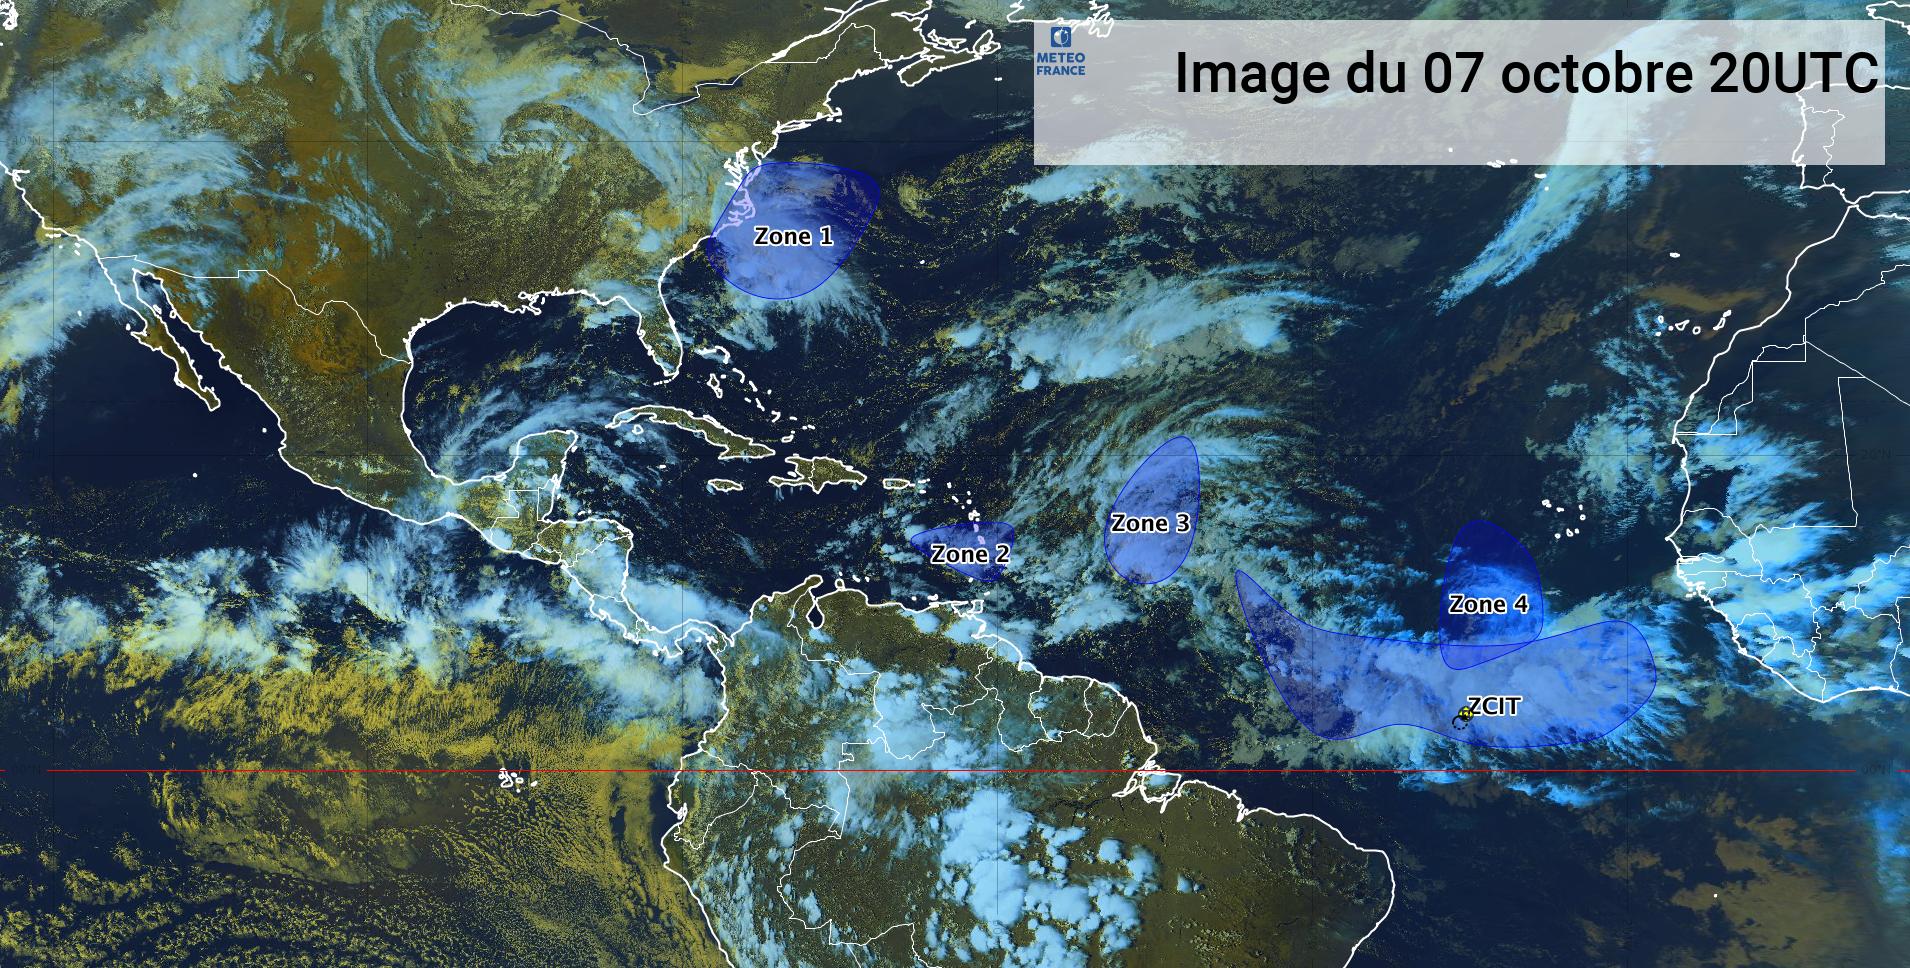     Une onde tropicale traverse les Petites Antilles (bulletin du 07/10/21)

